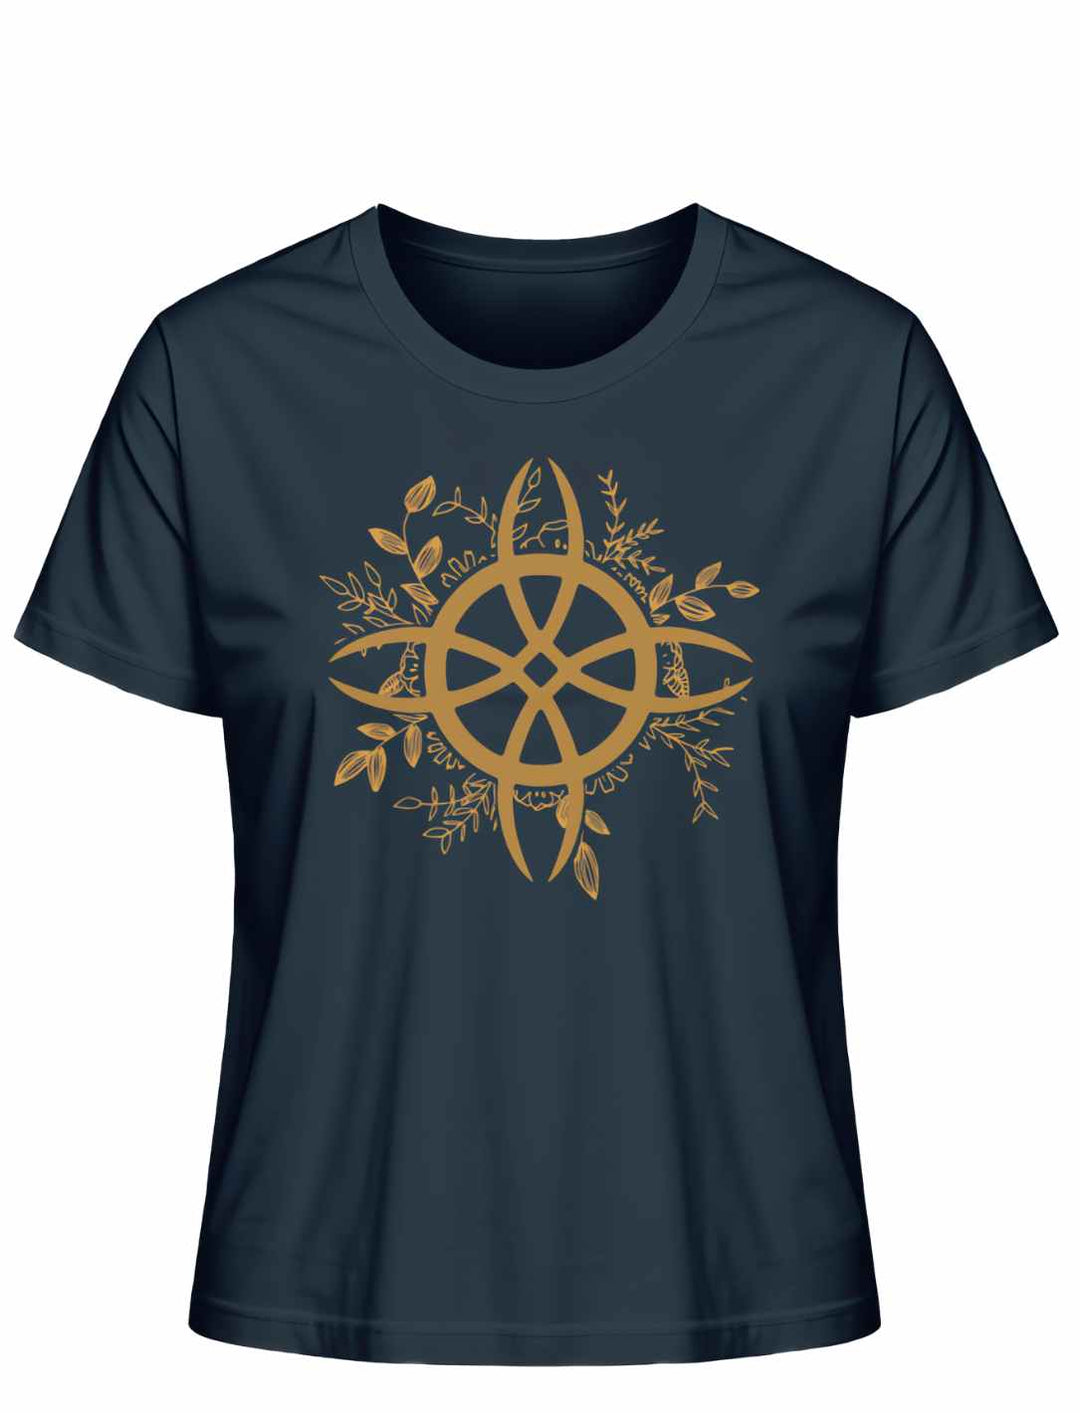 T-Shirt in French Navy mit 'Zirkel der grünen Magie' Symbol, kombiniert Eleganz und das Mysterium der grünen Magie für den alltäglichen Zauber.